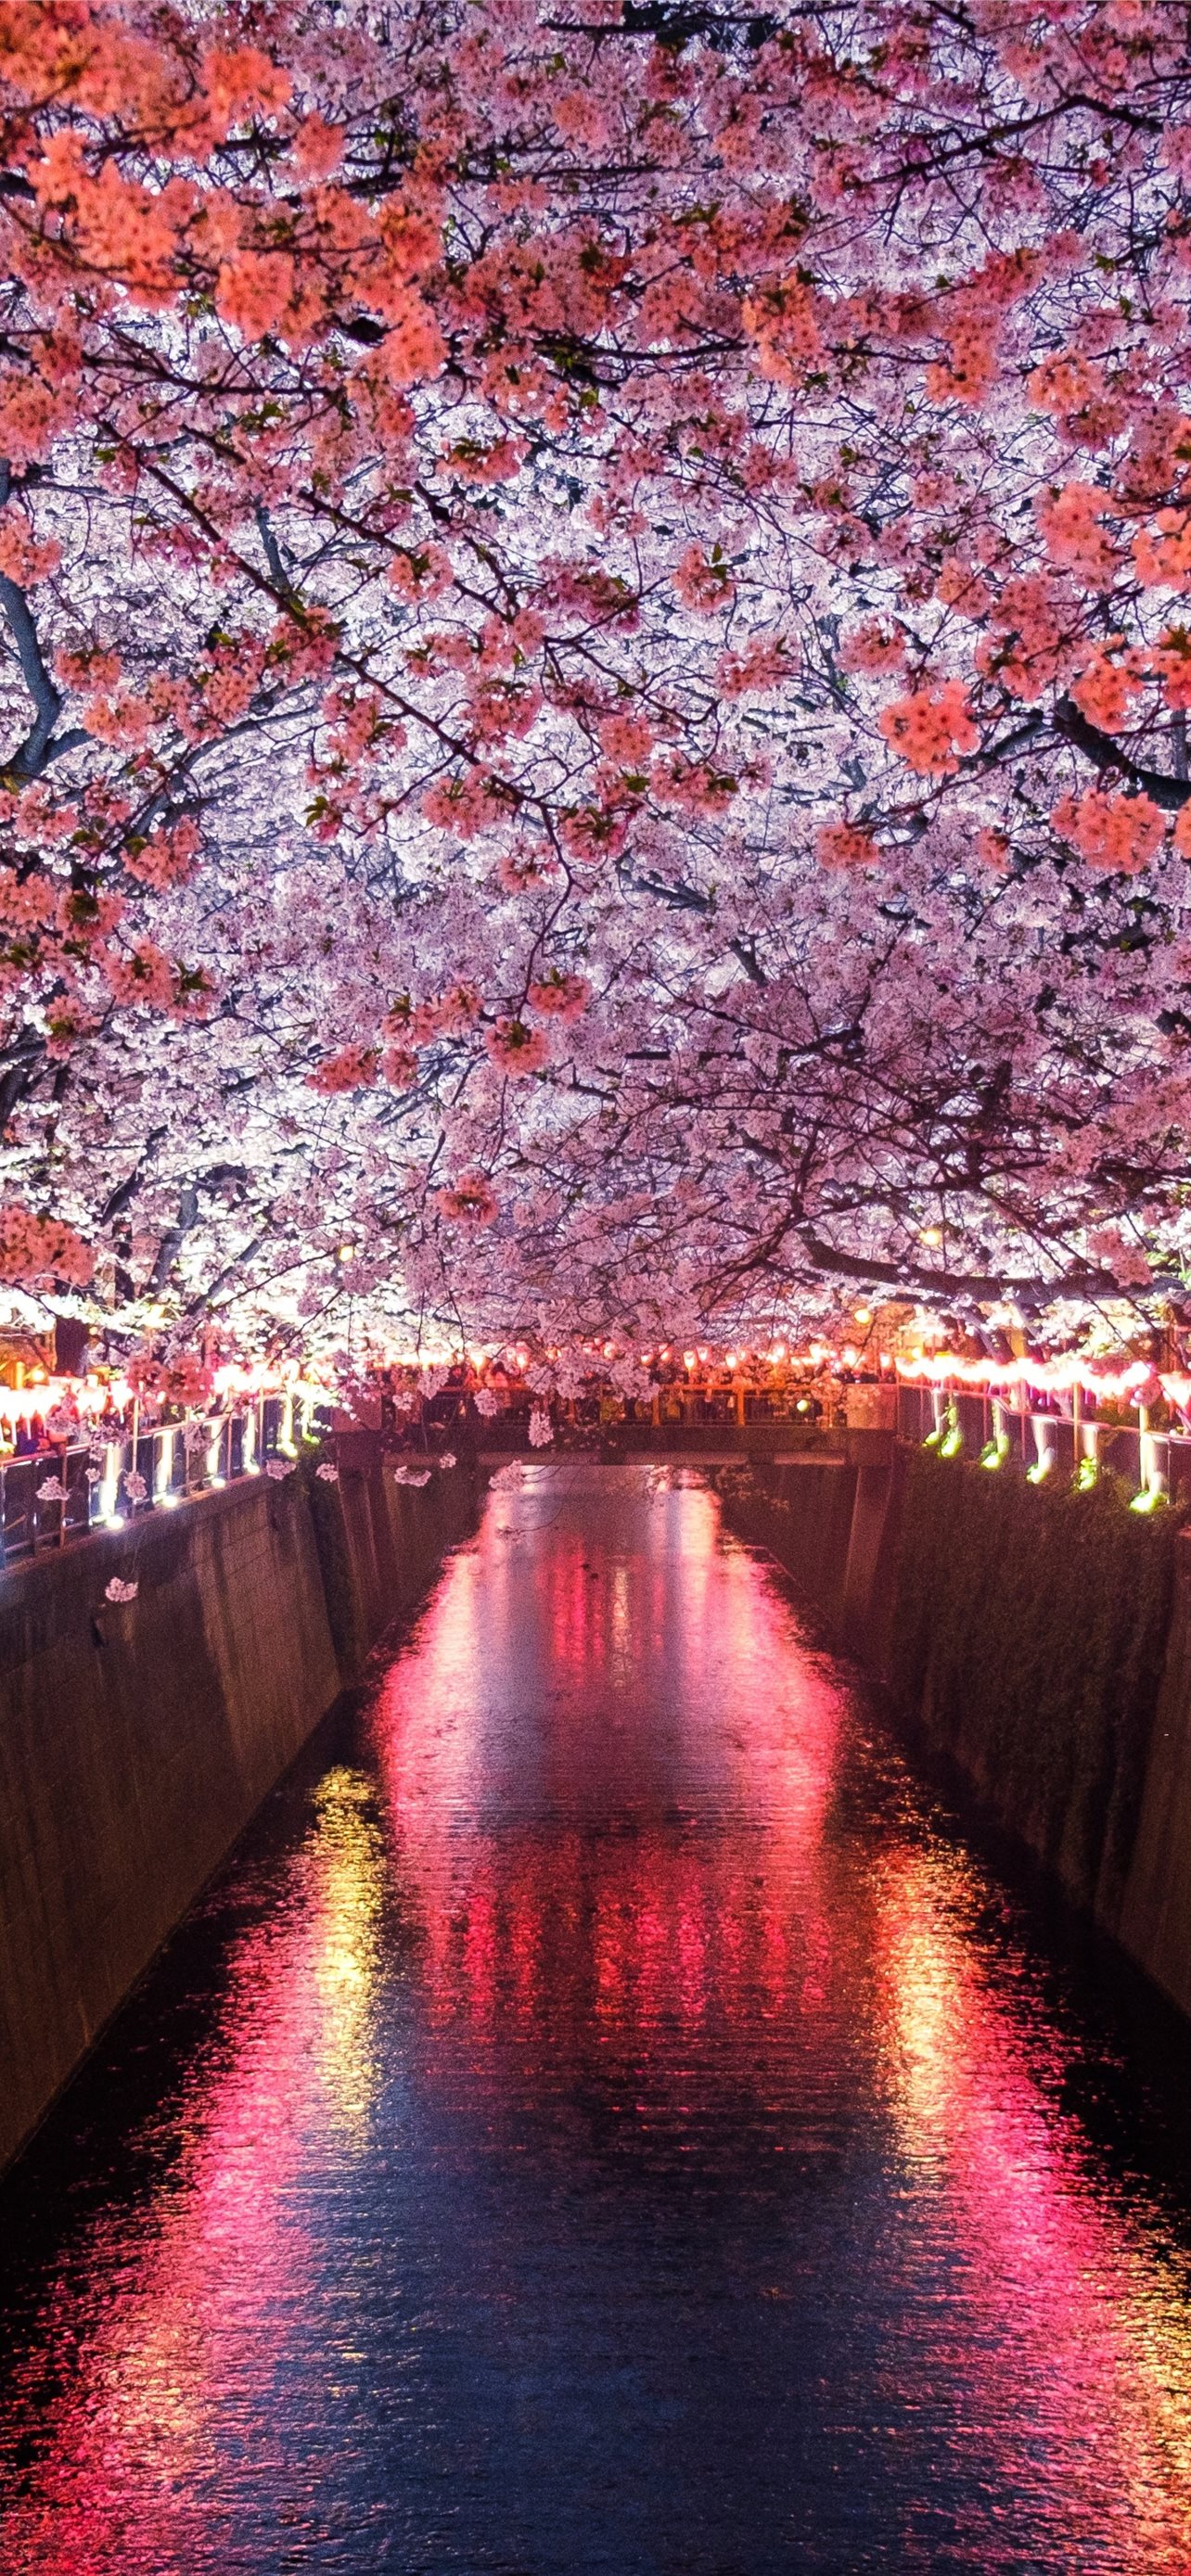  Sakura Tree iPhone Wallpaper Background HD Download  CBEditz